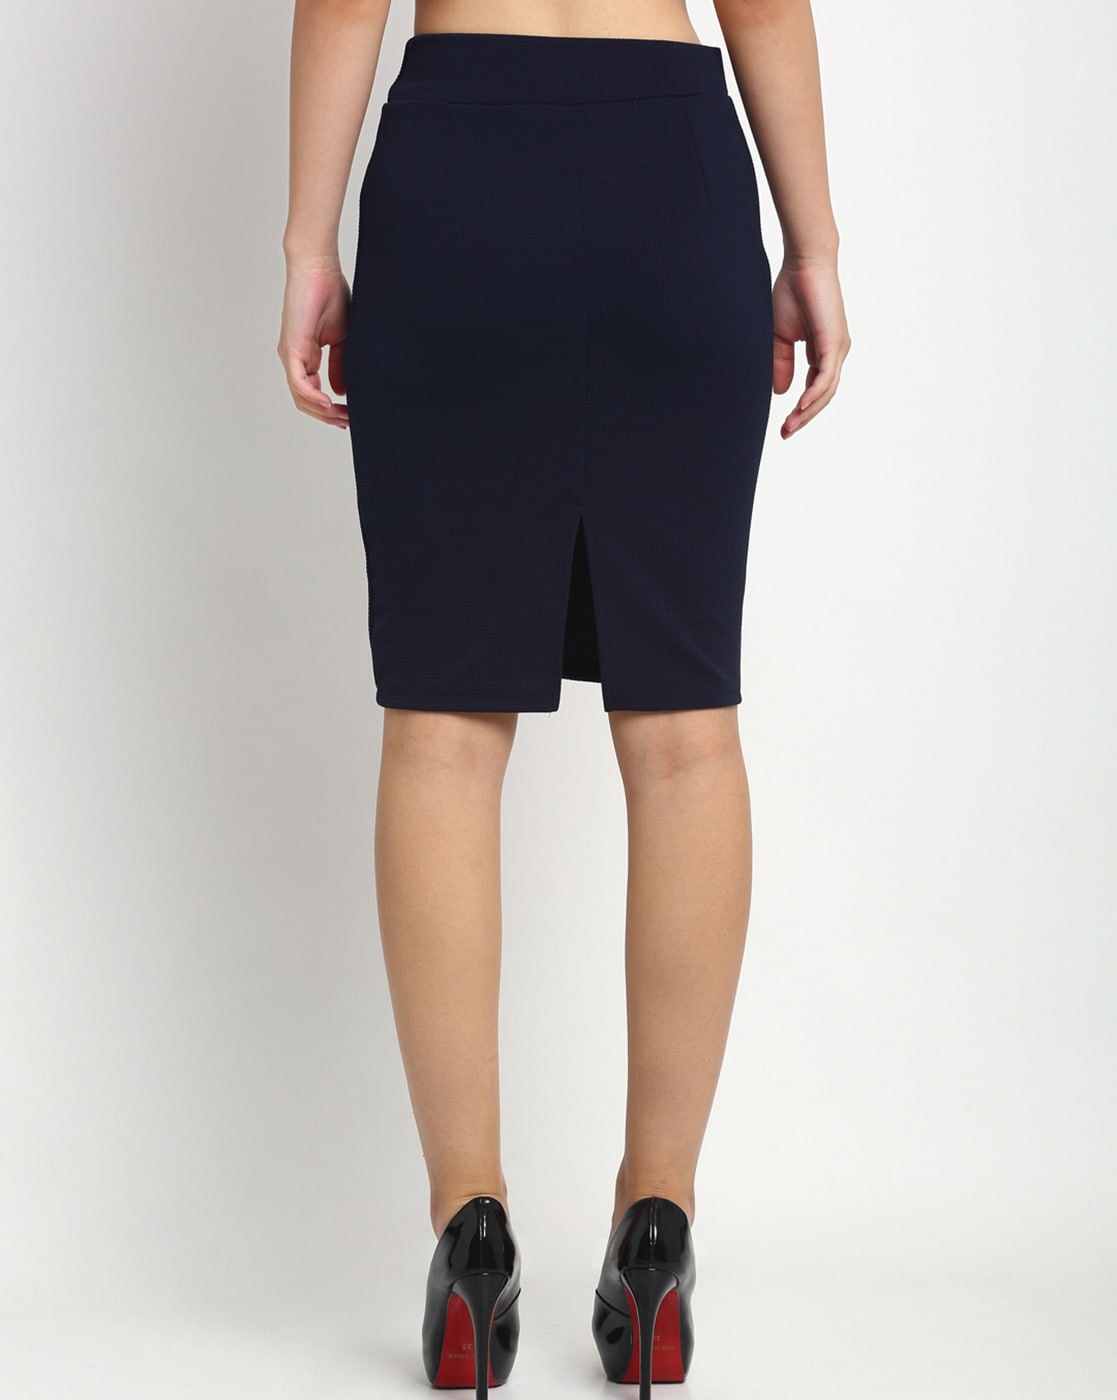 Navy Pleated Skirt High Waist Elastic Waist Band Midi Skirt Order Online |  G-Line